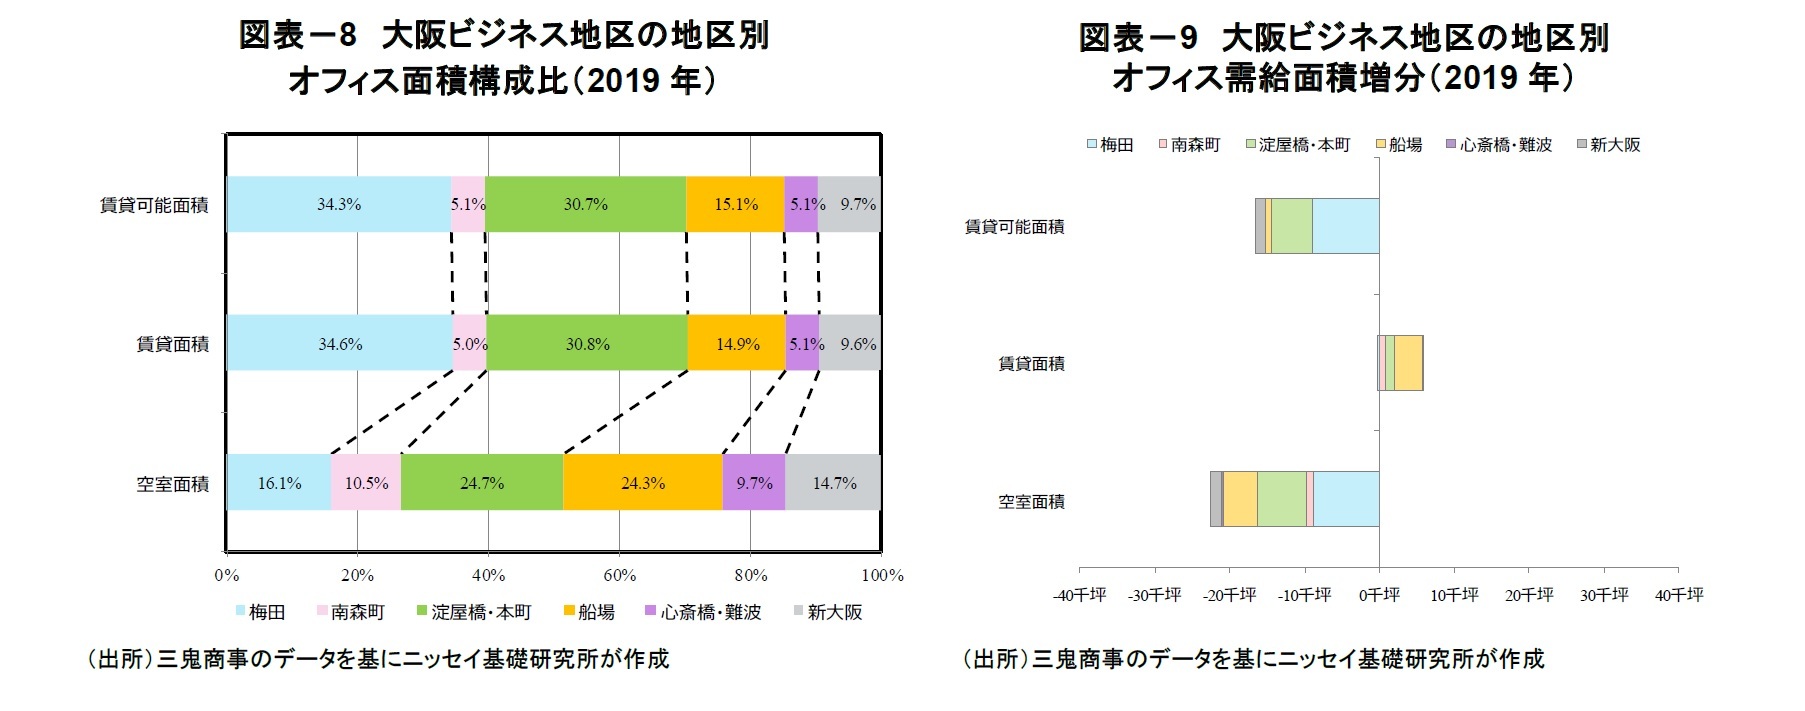 図表－8　大阪ビジネス地区の地区別オフィス面積構成比（2019年）/図表－9　大阪ビジネス地区の地区別オフィス需給面積増分（2019年）